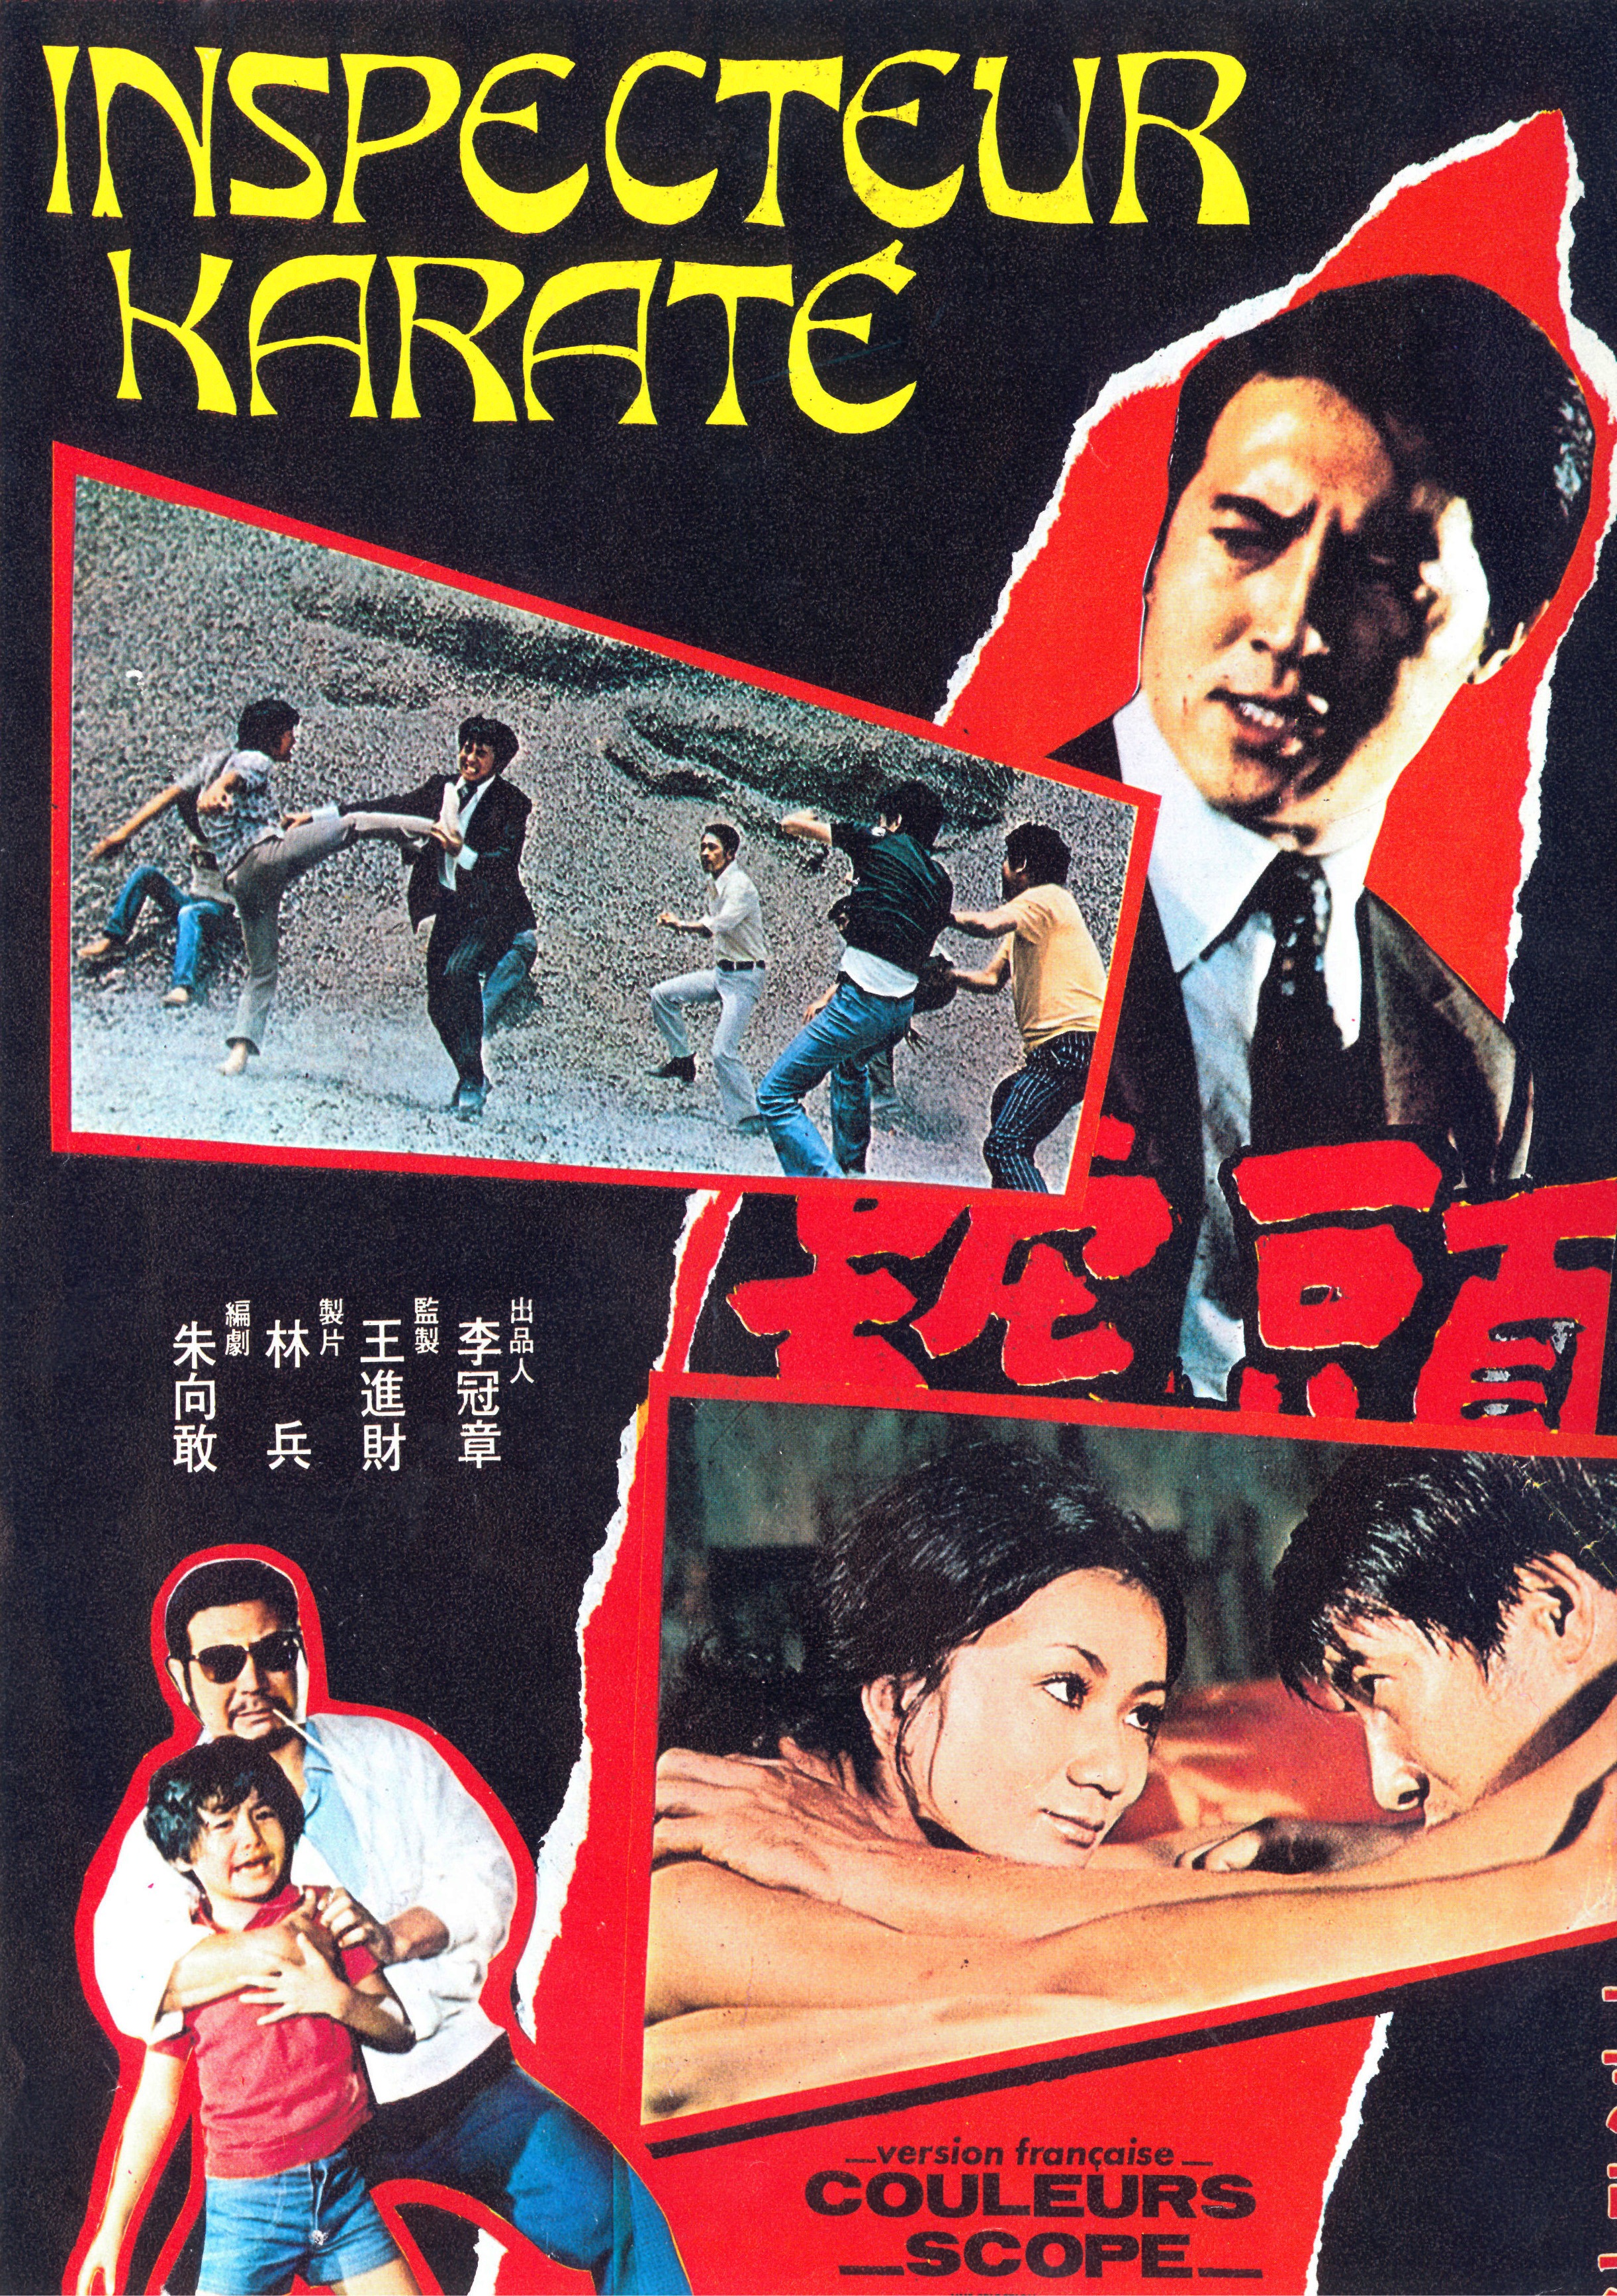 Tou hao tie ren (1973) Screenshot 1 